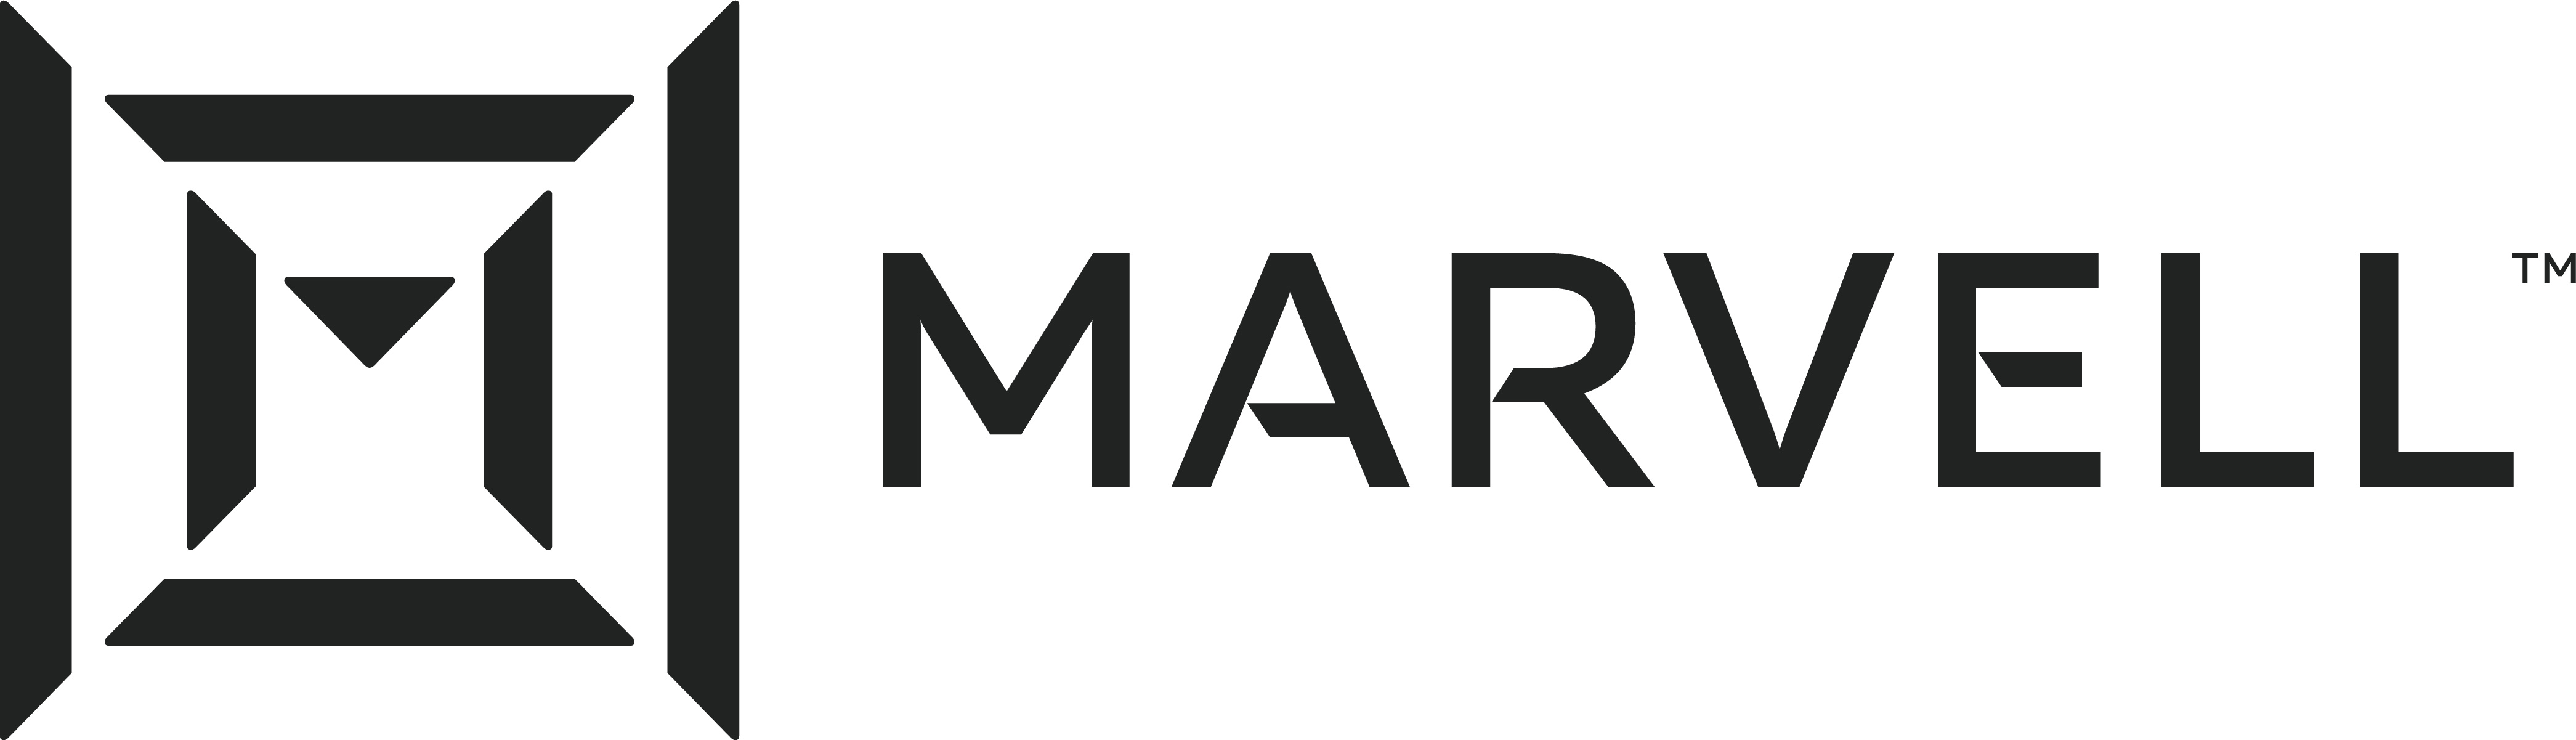 marvell_logo.jpg